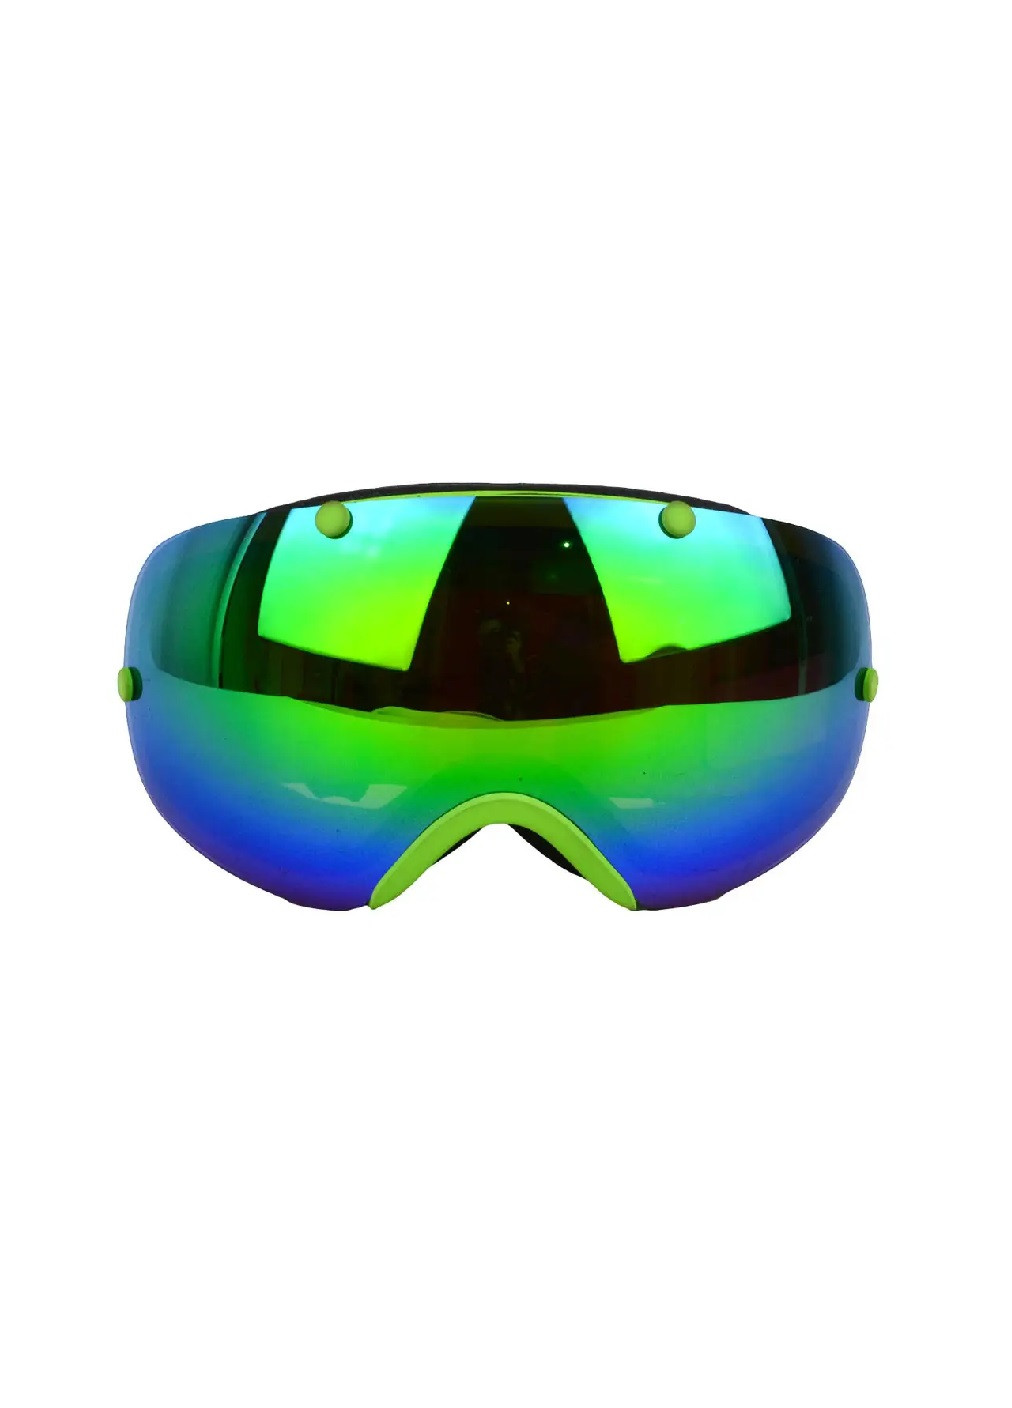 Маска очки горнолыжные защитные для сноуборда лыж зимних видов спорта 21.5х9.5 см (475940-Prob) Сине-зеленая Unbranded (275068643)